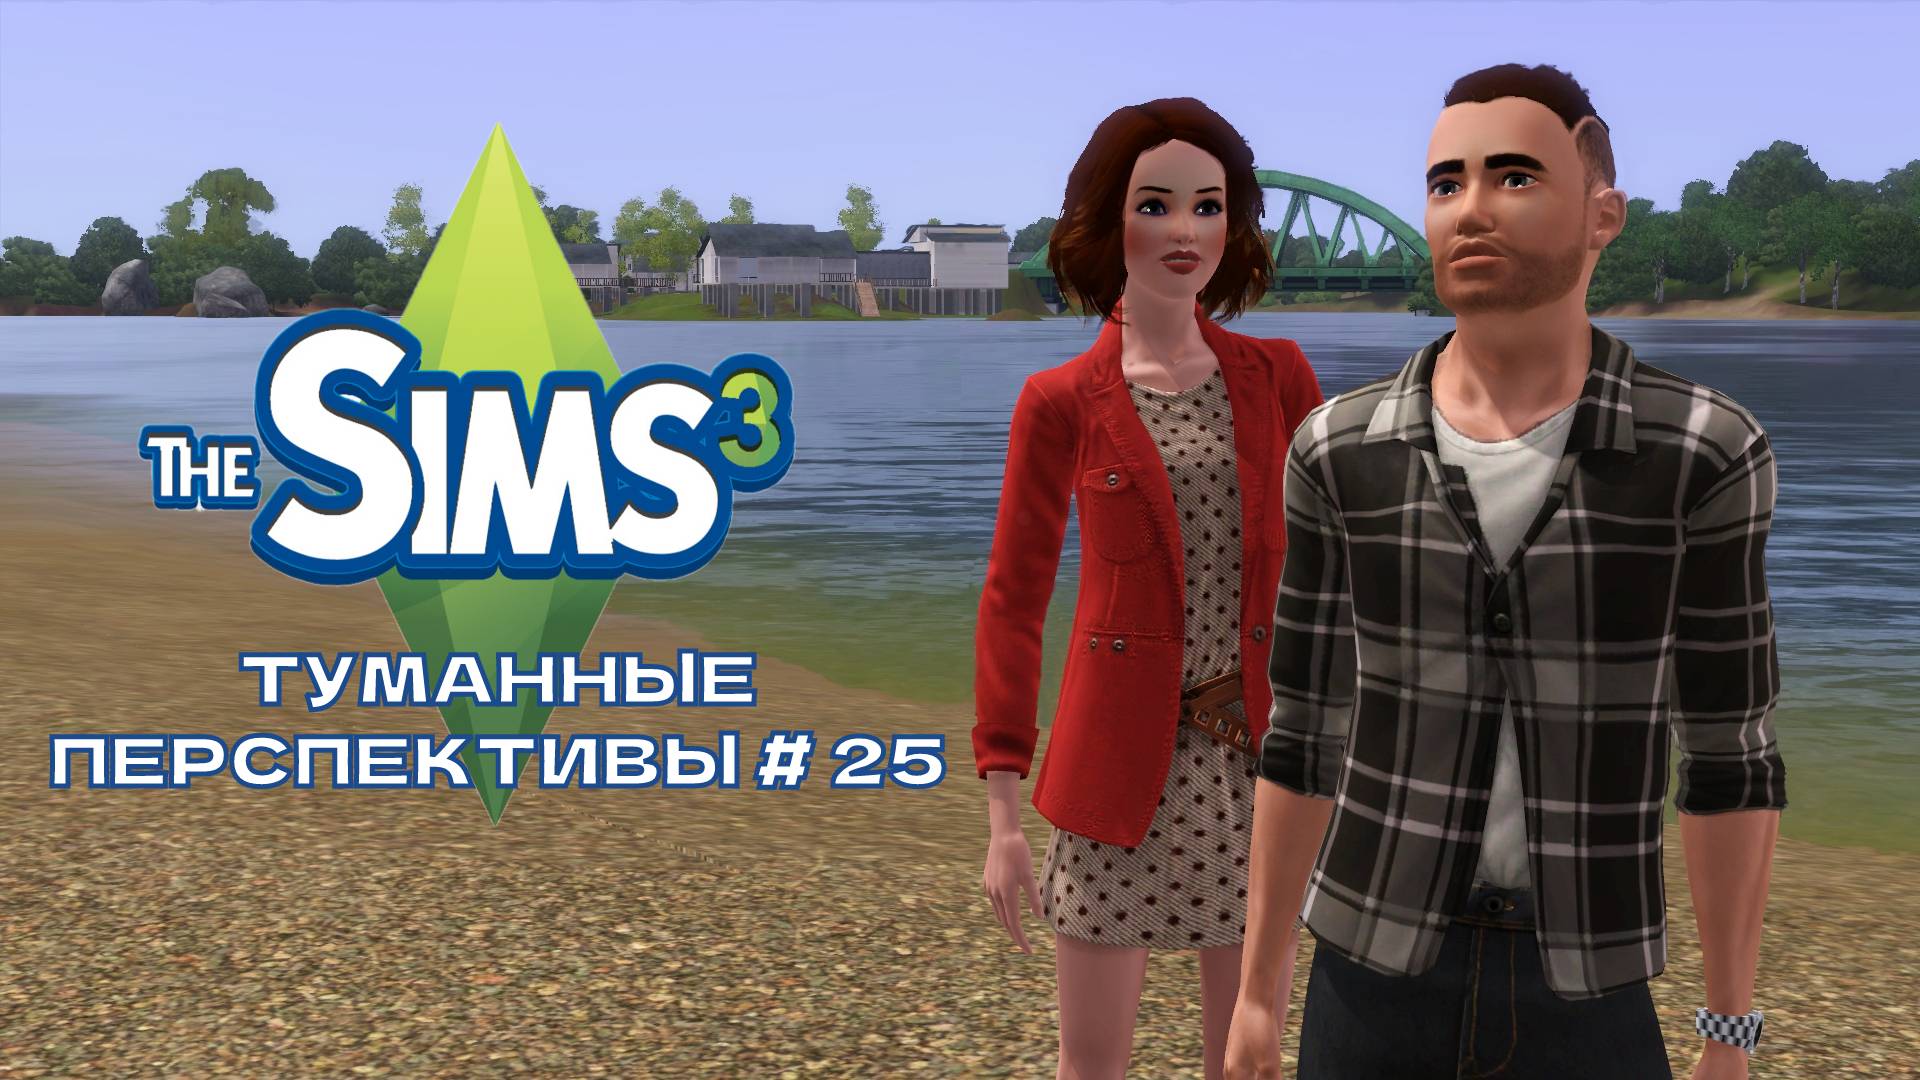 The Sims 3. Туманные перспективы #25. Какой конфуз!)))